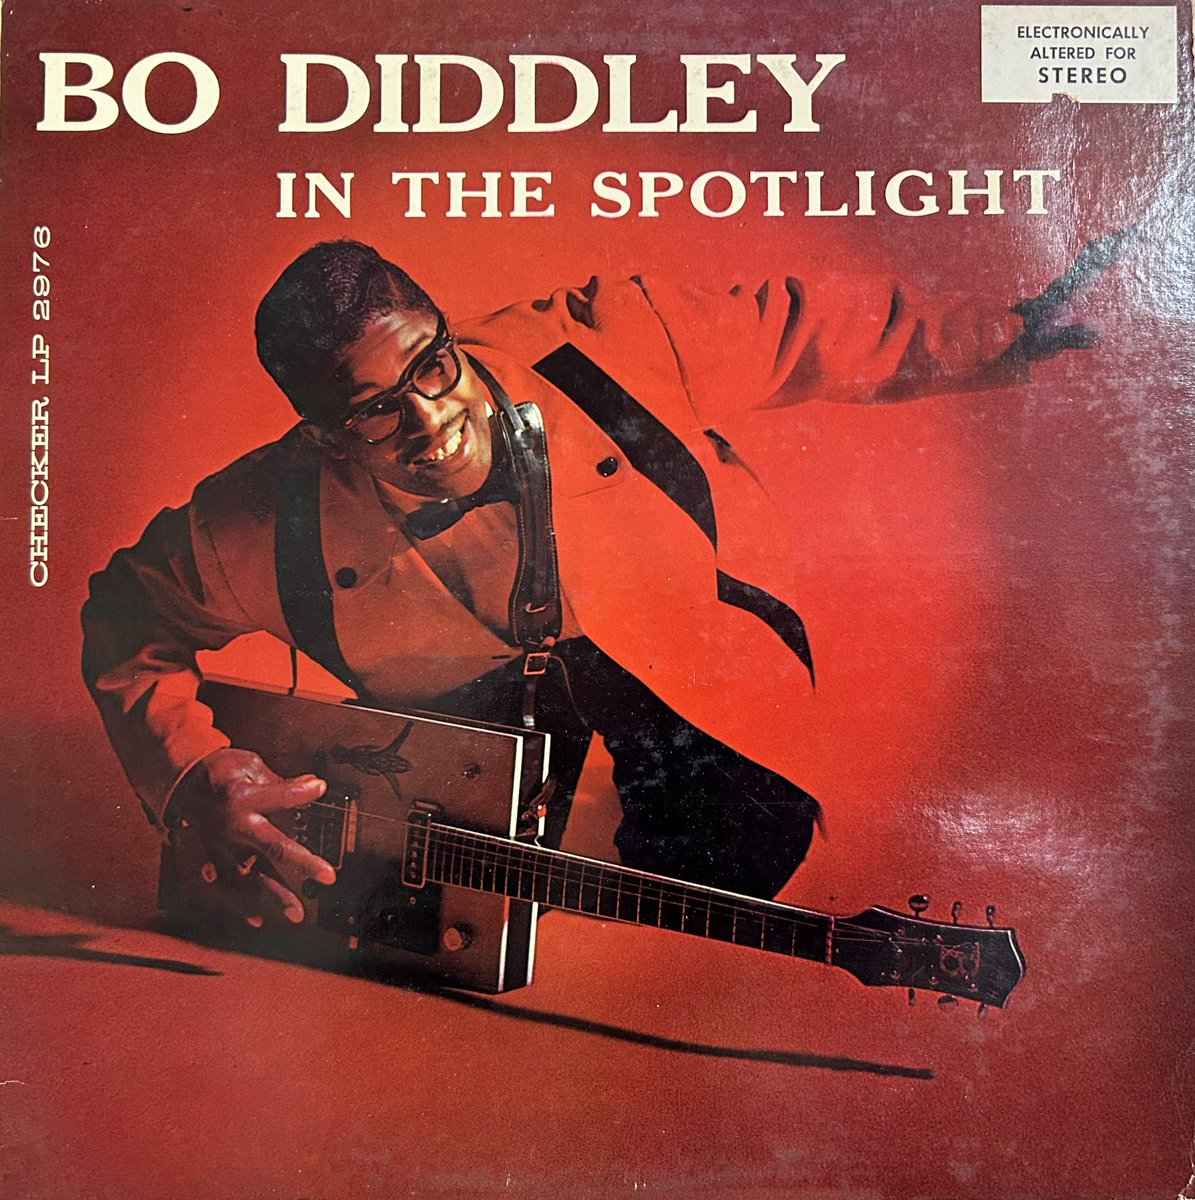 今日（昨日）の1曲！
Bo Diddley,
Live My Life.
youtube.com/watch?v=TMkdcY…
#rhythmandblues 
#checkerrecords
#bodiddley